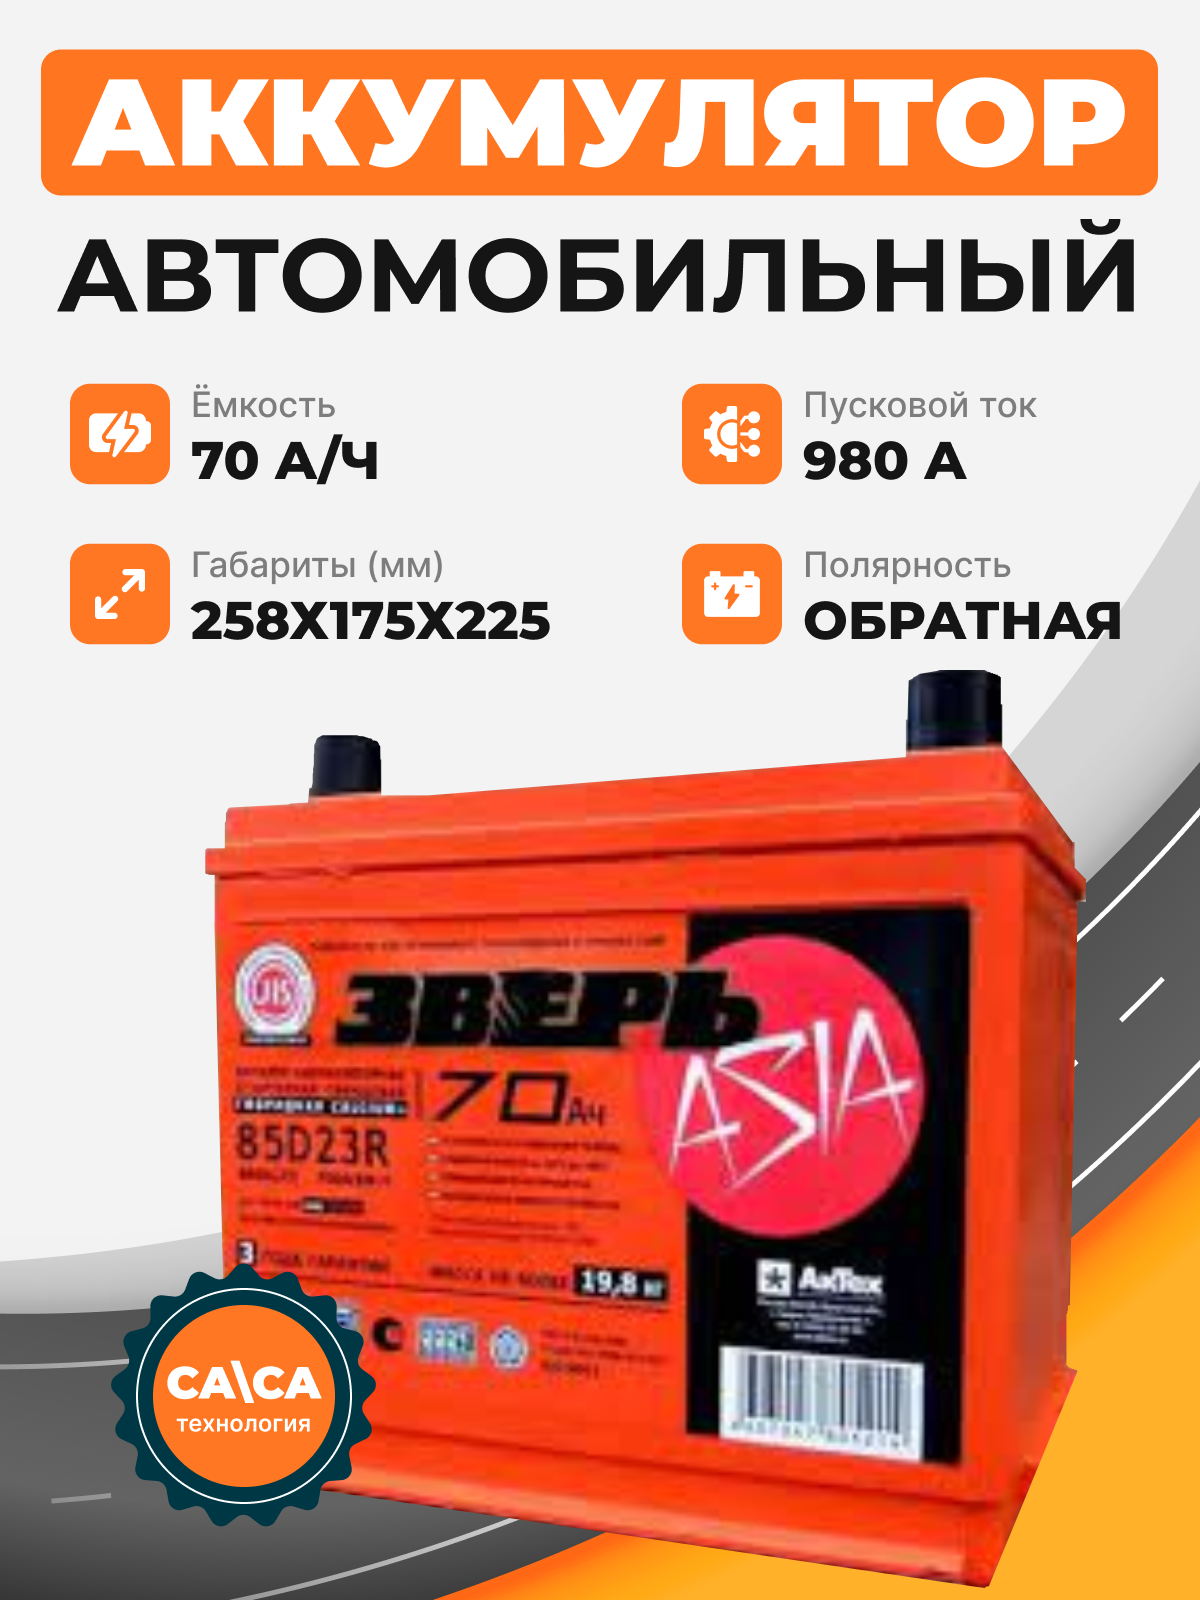 Аккумулятор Зверь Asia 70 о.п. стартовый ток 980 EN ZVKA 70-3-R